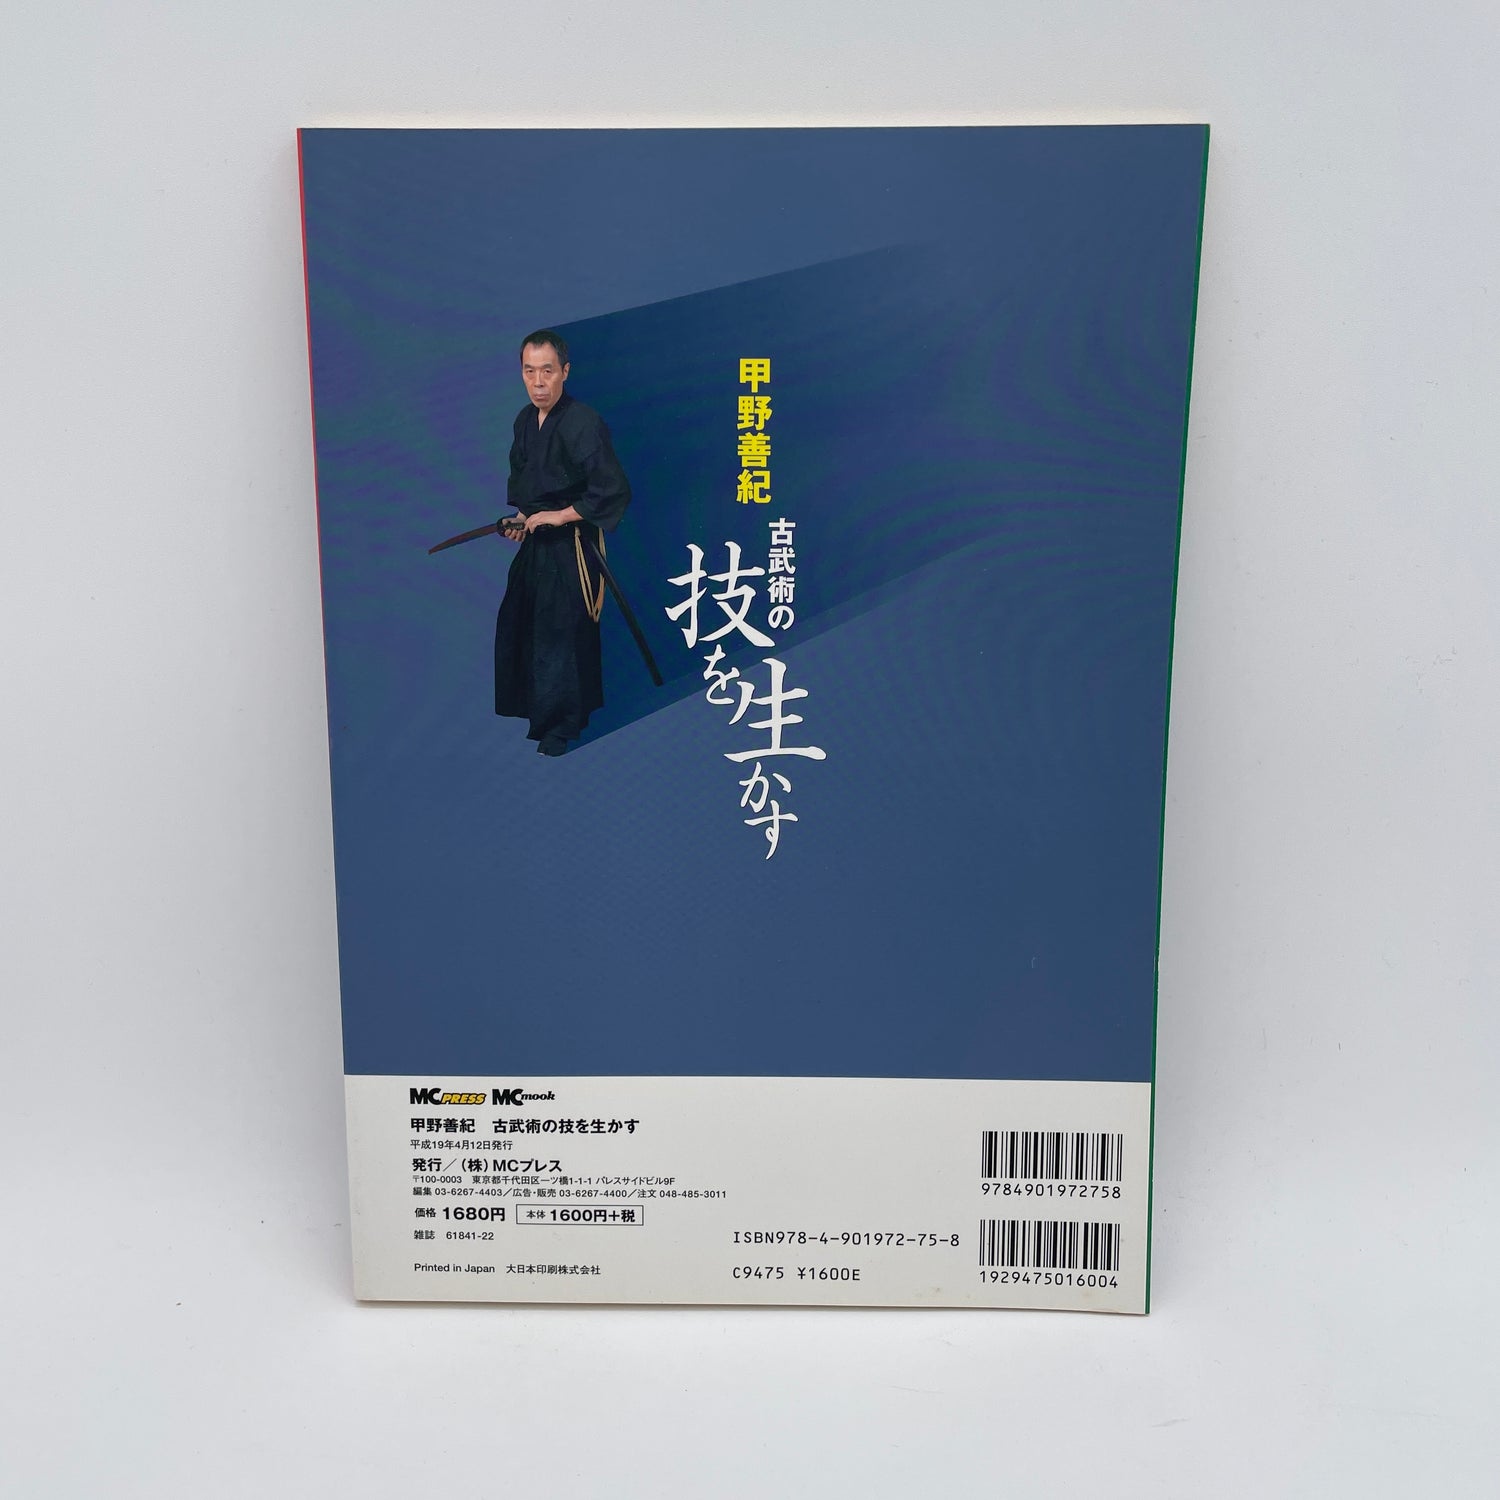 甲野善紀の古武術テクニックブック&DVD (中古)